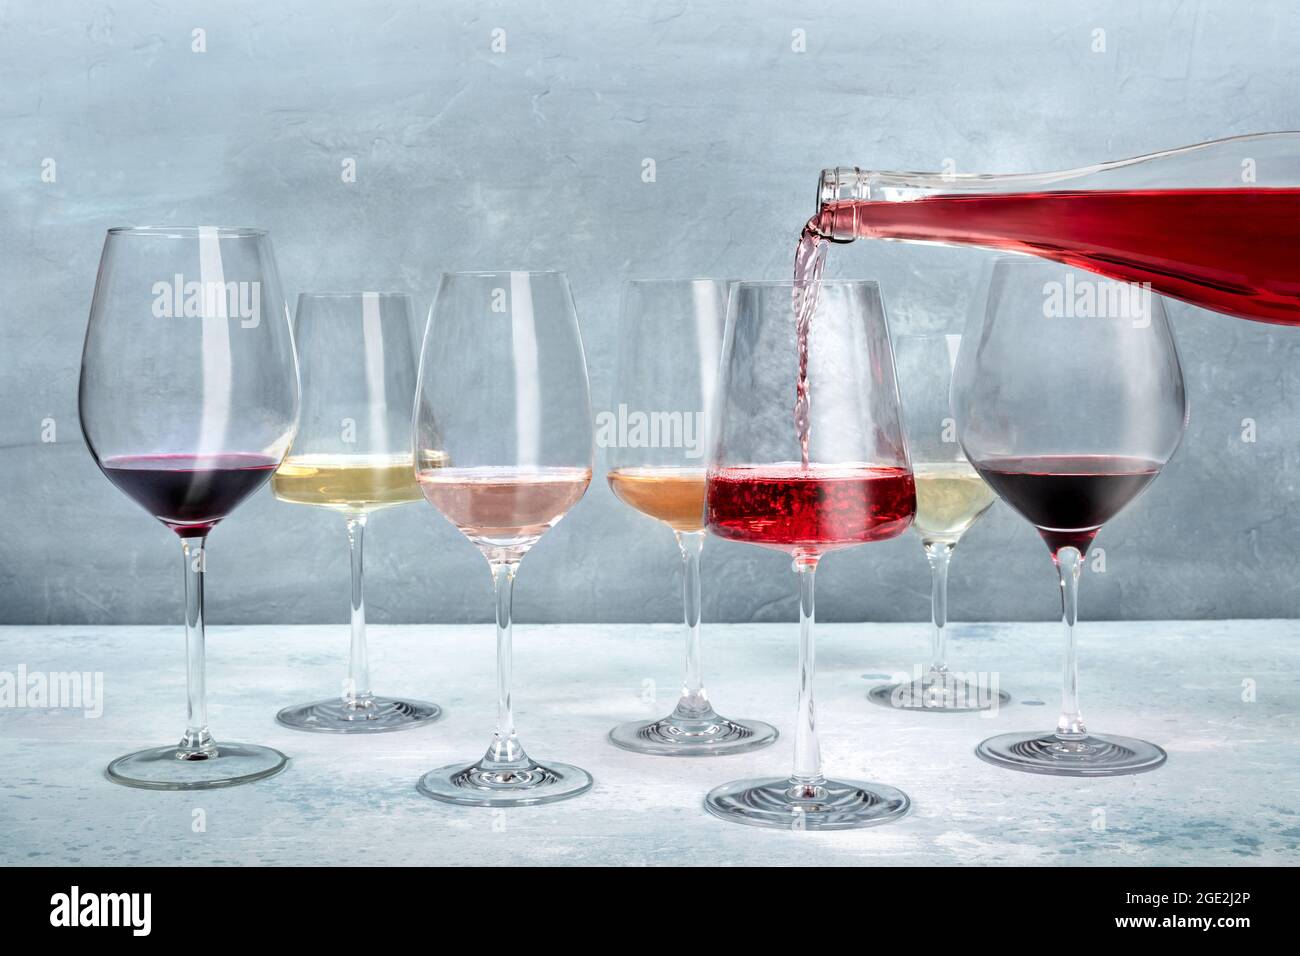 Vin de rose versé dans un verre lors d'une dégustation, avec du vin blanc et rouge de différentes couleurs. Événement de dégustation de vins Banque D'Images